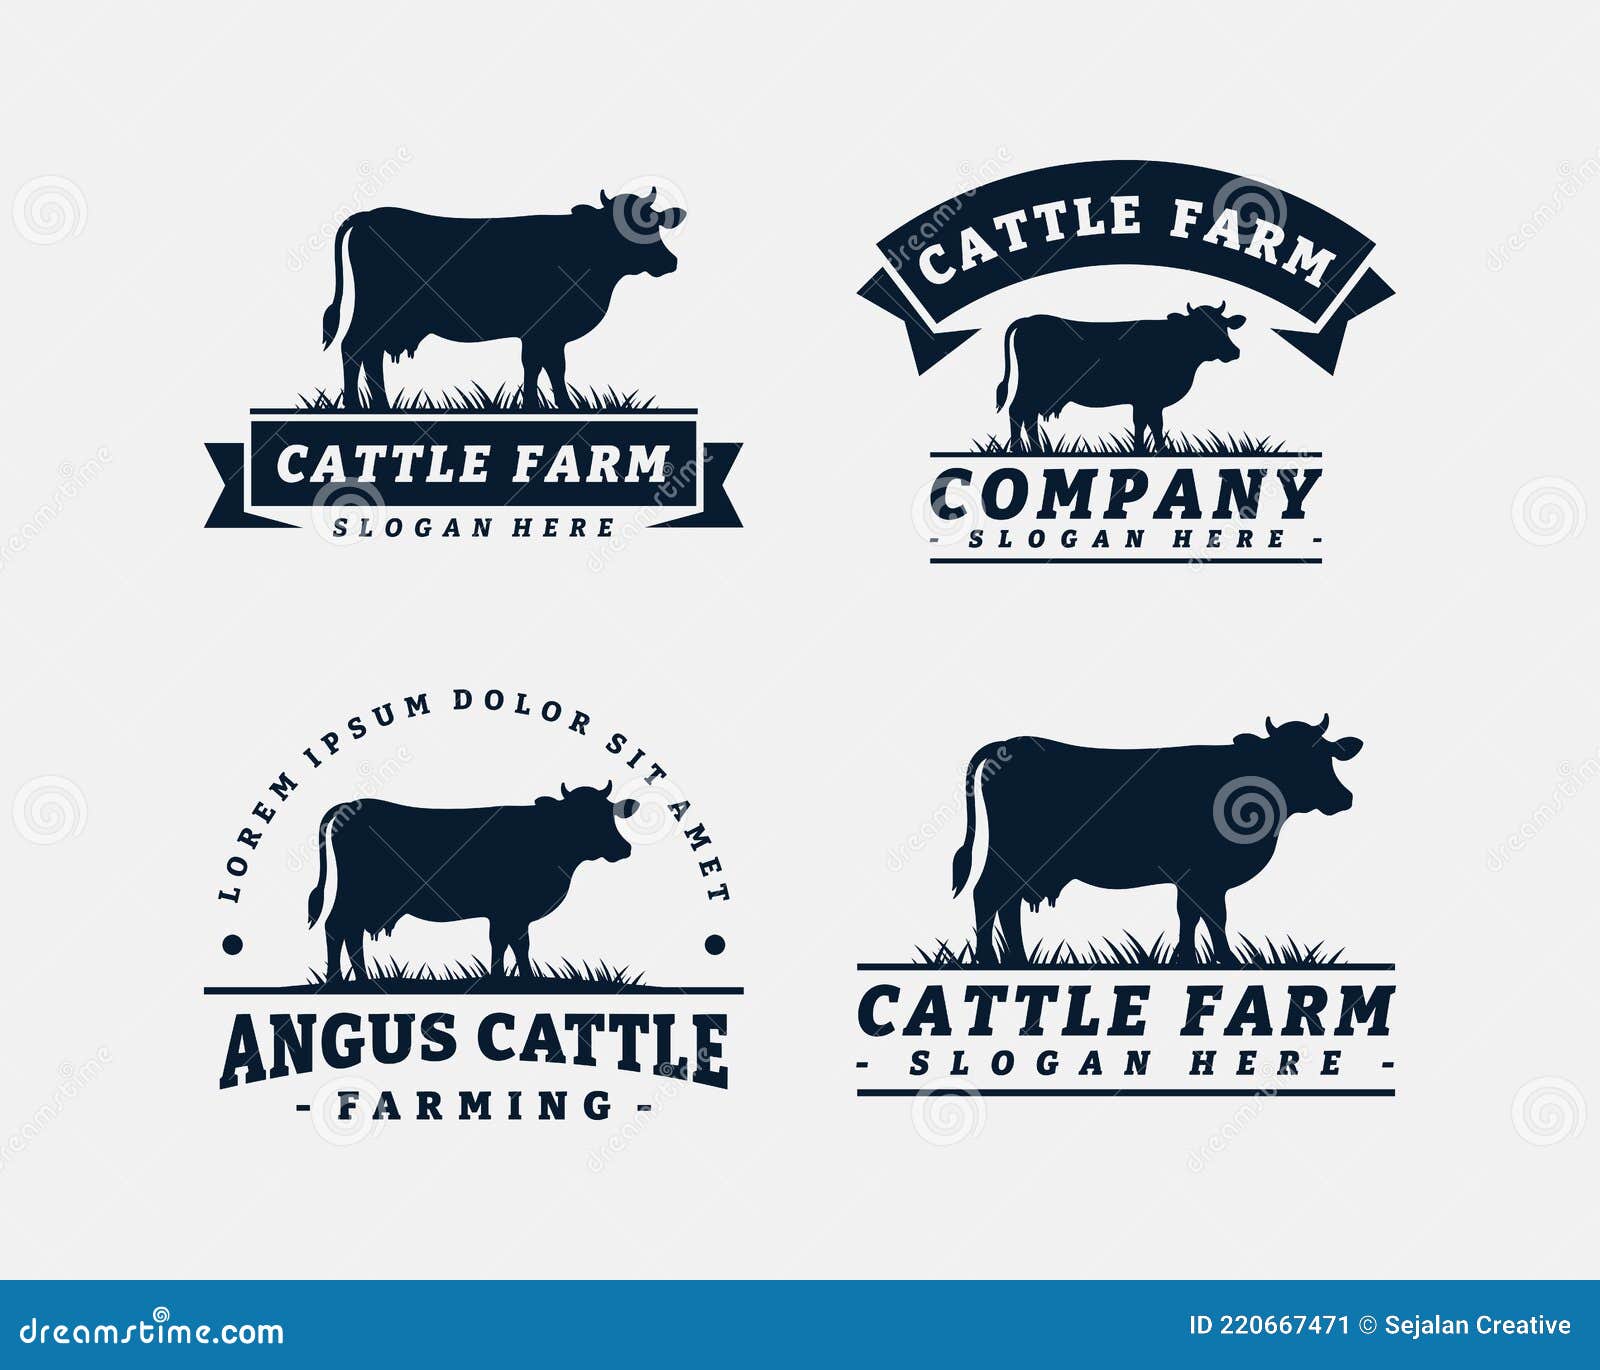 cattle brand logo design